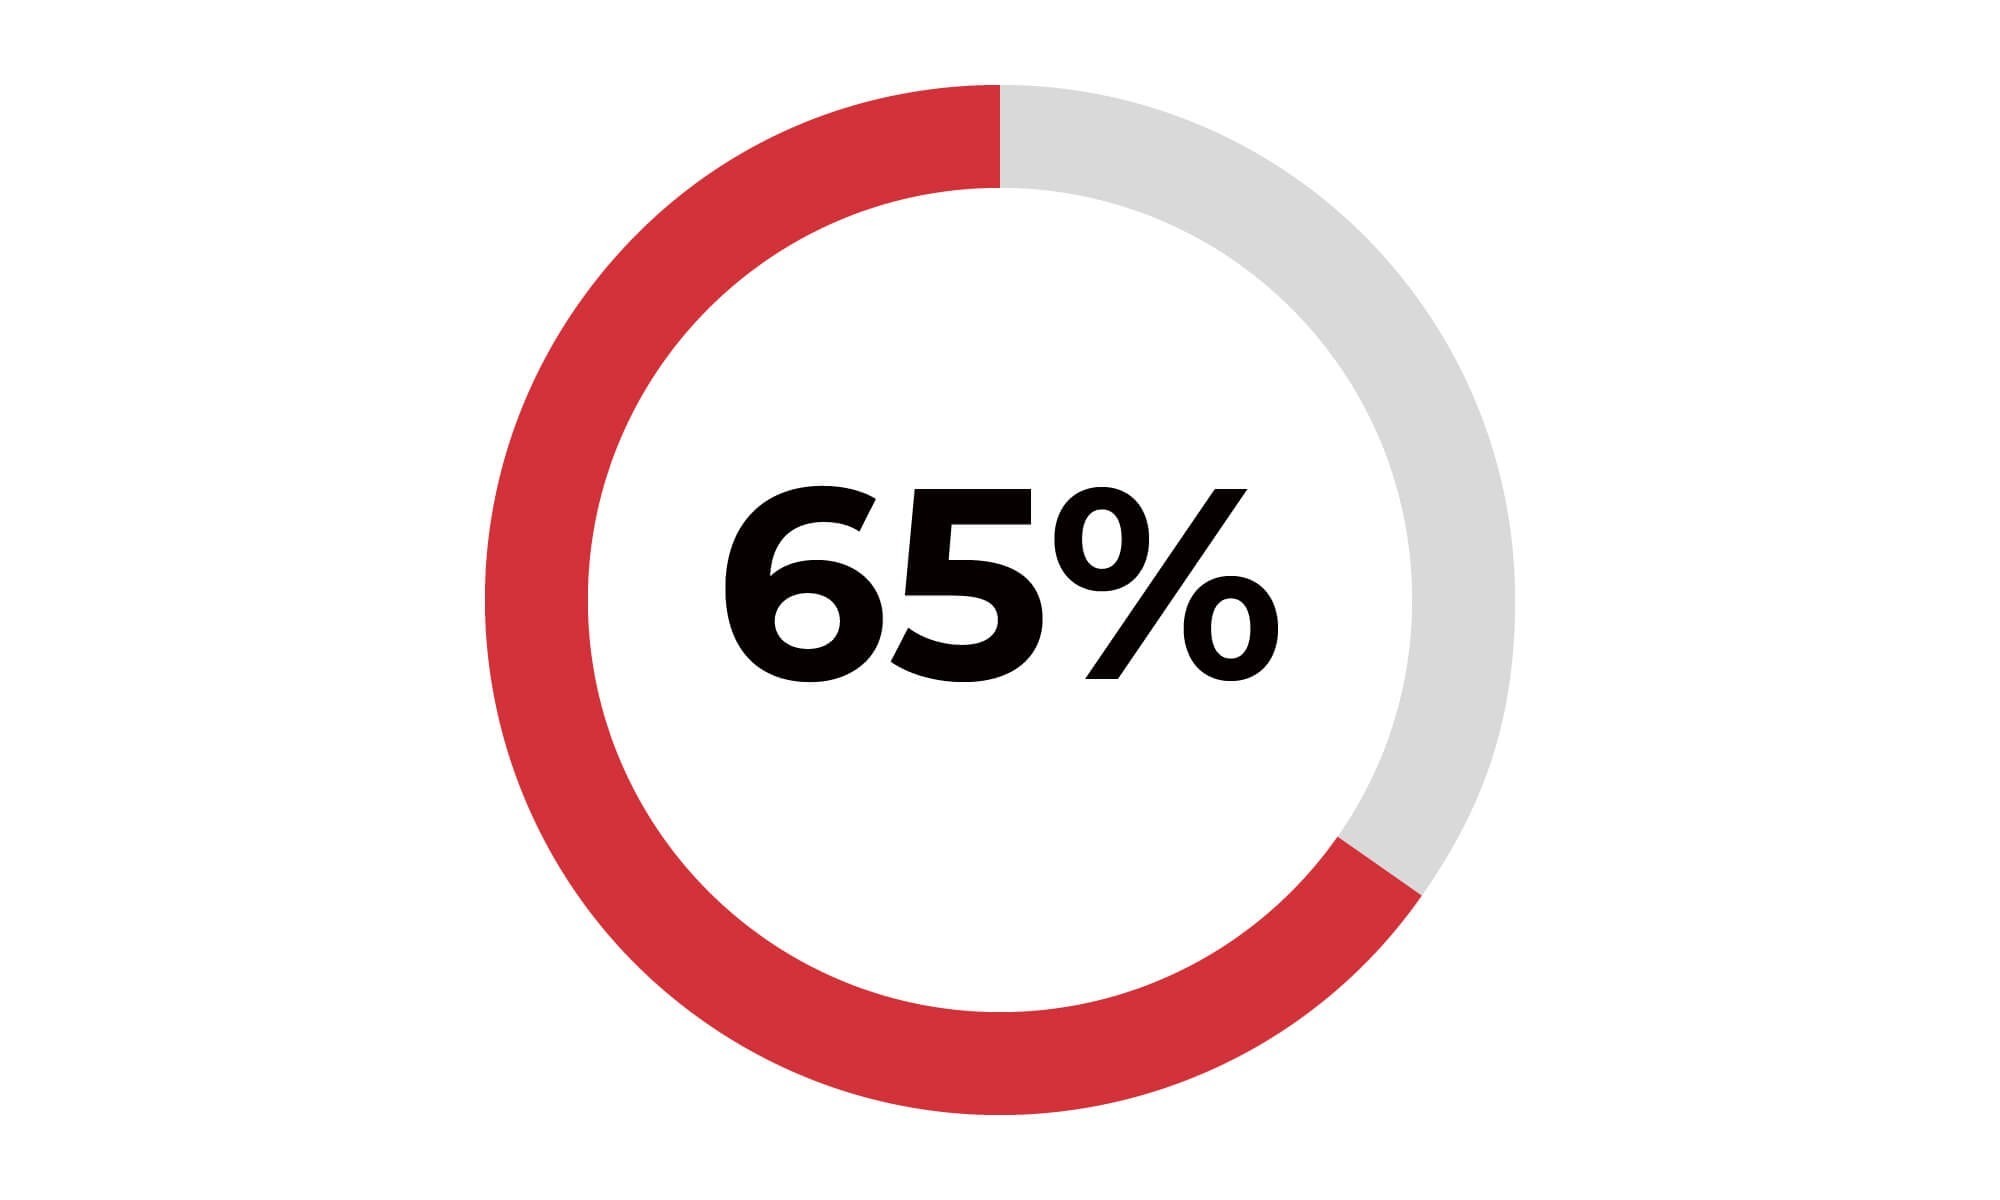 エイペックス経由で転職された方の65%が、60日以内に応募先企業の内定を獲得しています。